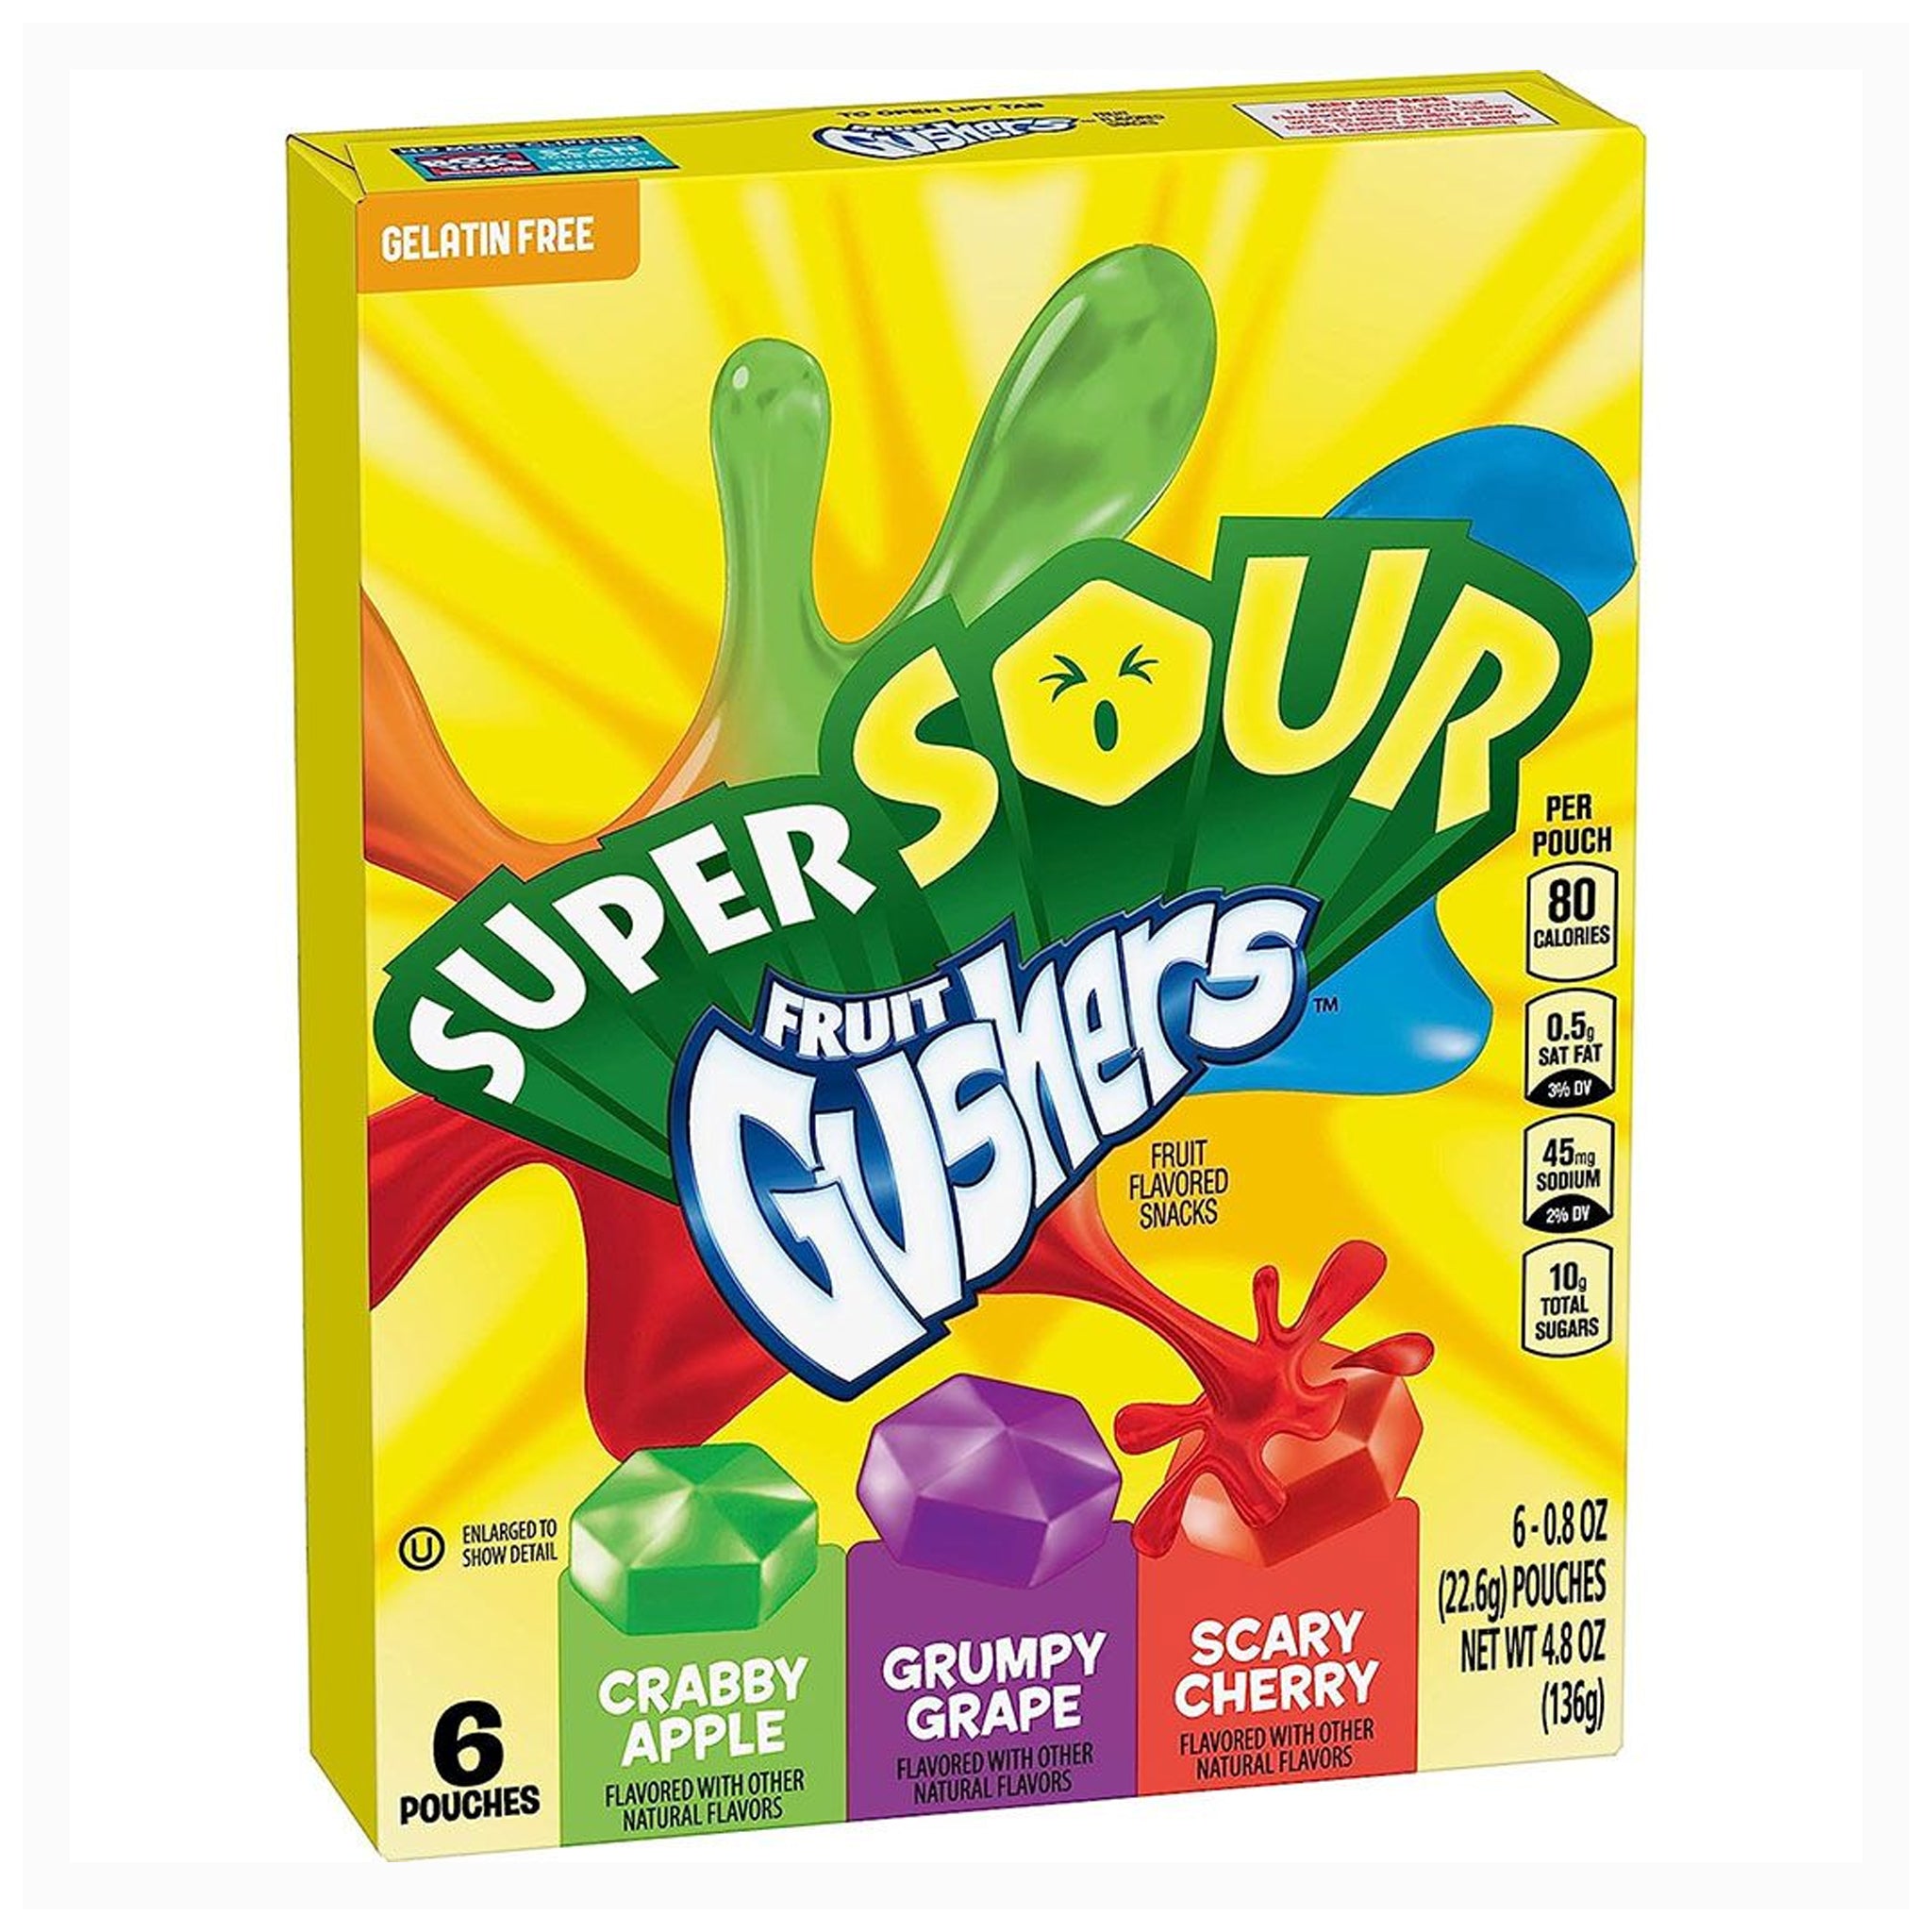 Super Sour Fruit Gushers גאשרס מיקס פירות חמוצים